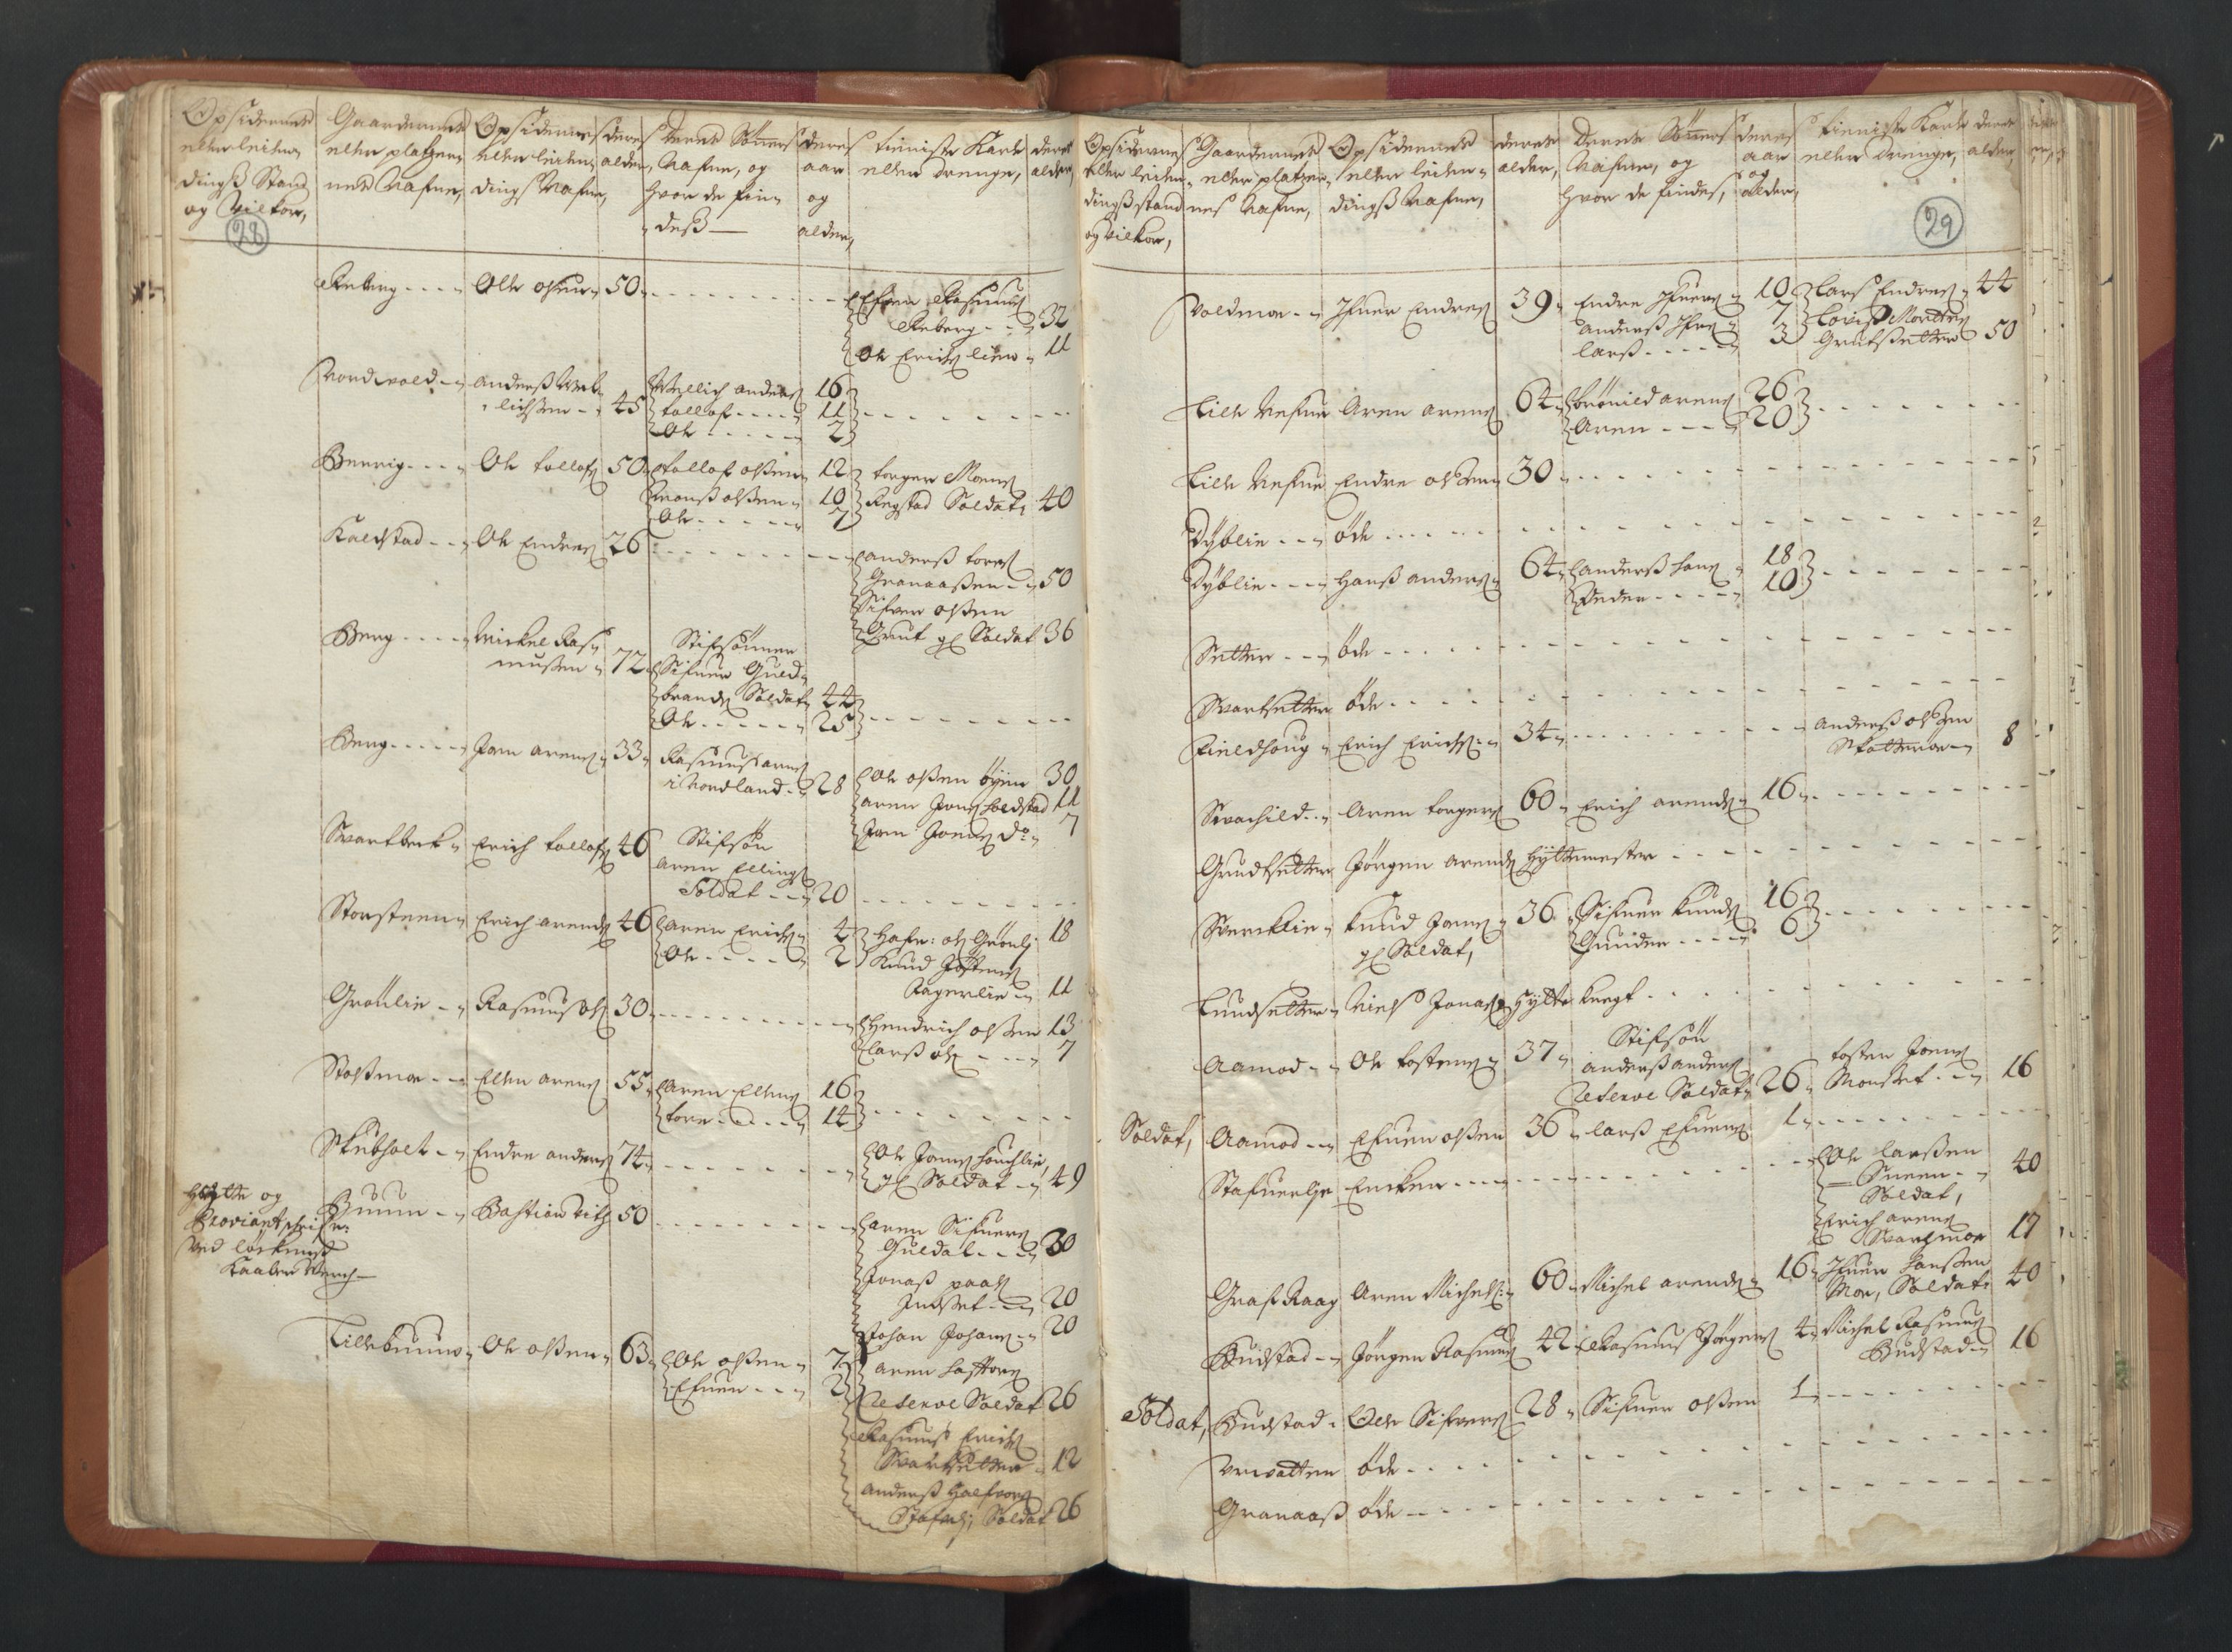 RA, Manntallet 1701, nr. 13: Orkdal fogderi og Gauldal fogderi med Røros kobberverk, 1701, s. 28-29